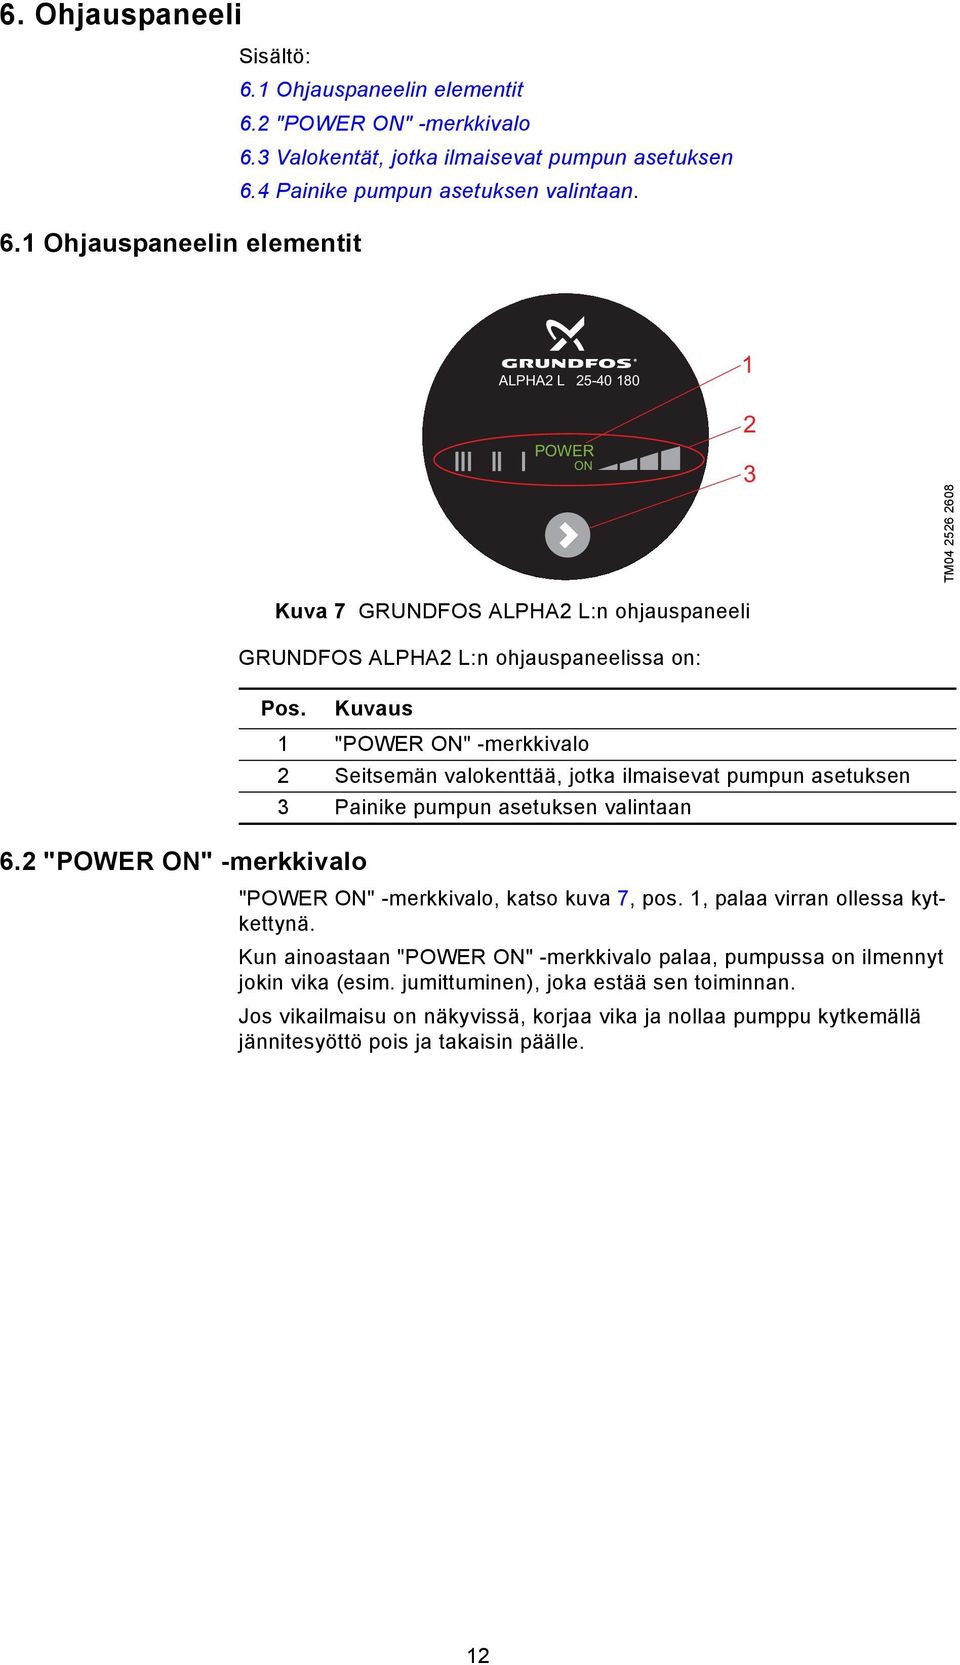 Kuvaus 1 "POWER ON" -merkkivalo 2 Seitsemän valokenttää, jotka ilmaisevat pumpun asetuksen 3 Painike pumpun asetuksen valintaan "POWER ON" -merkkivalo, katso kuva 7, pos.